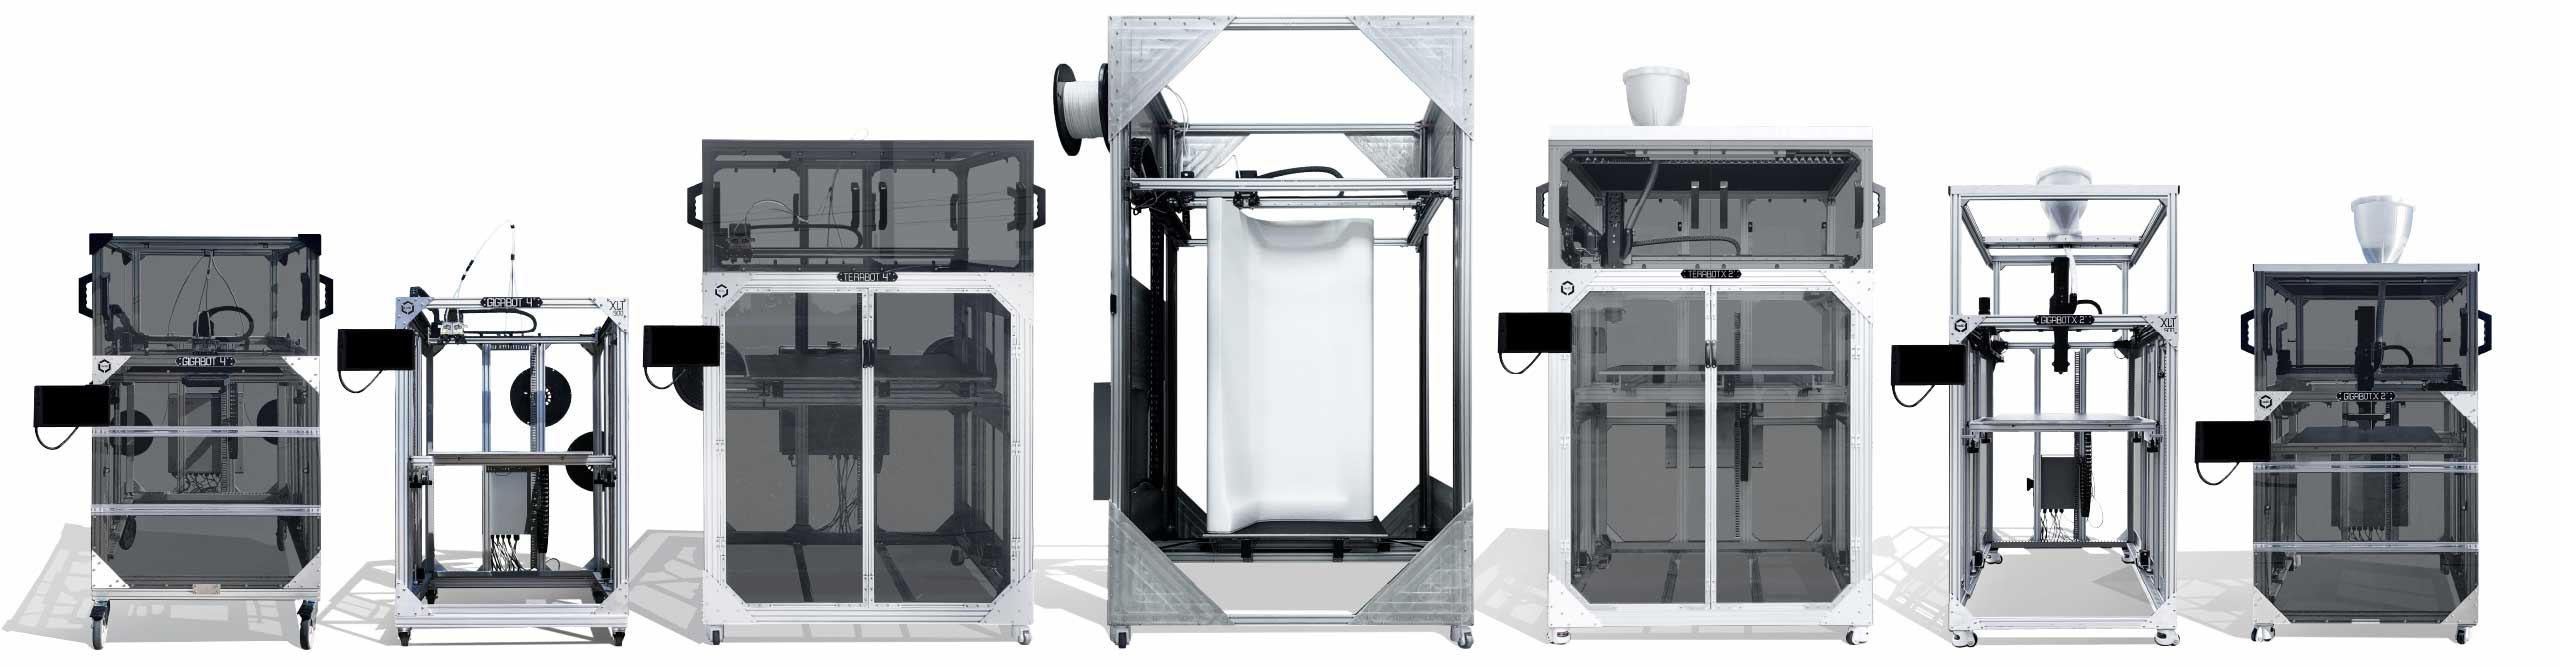 the full line of Gigabot 3D Printers